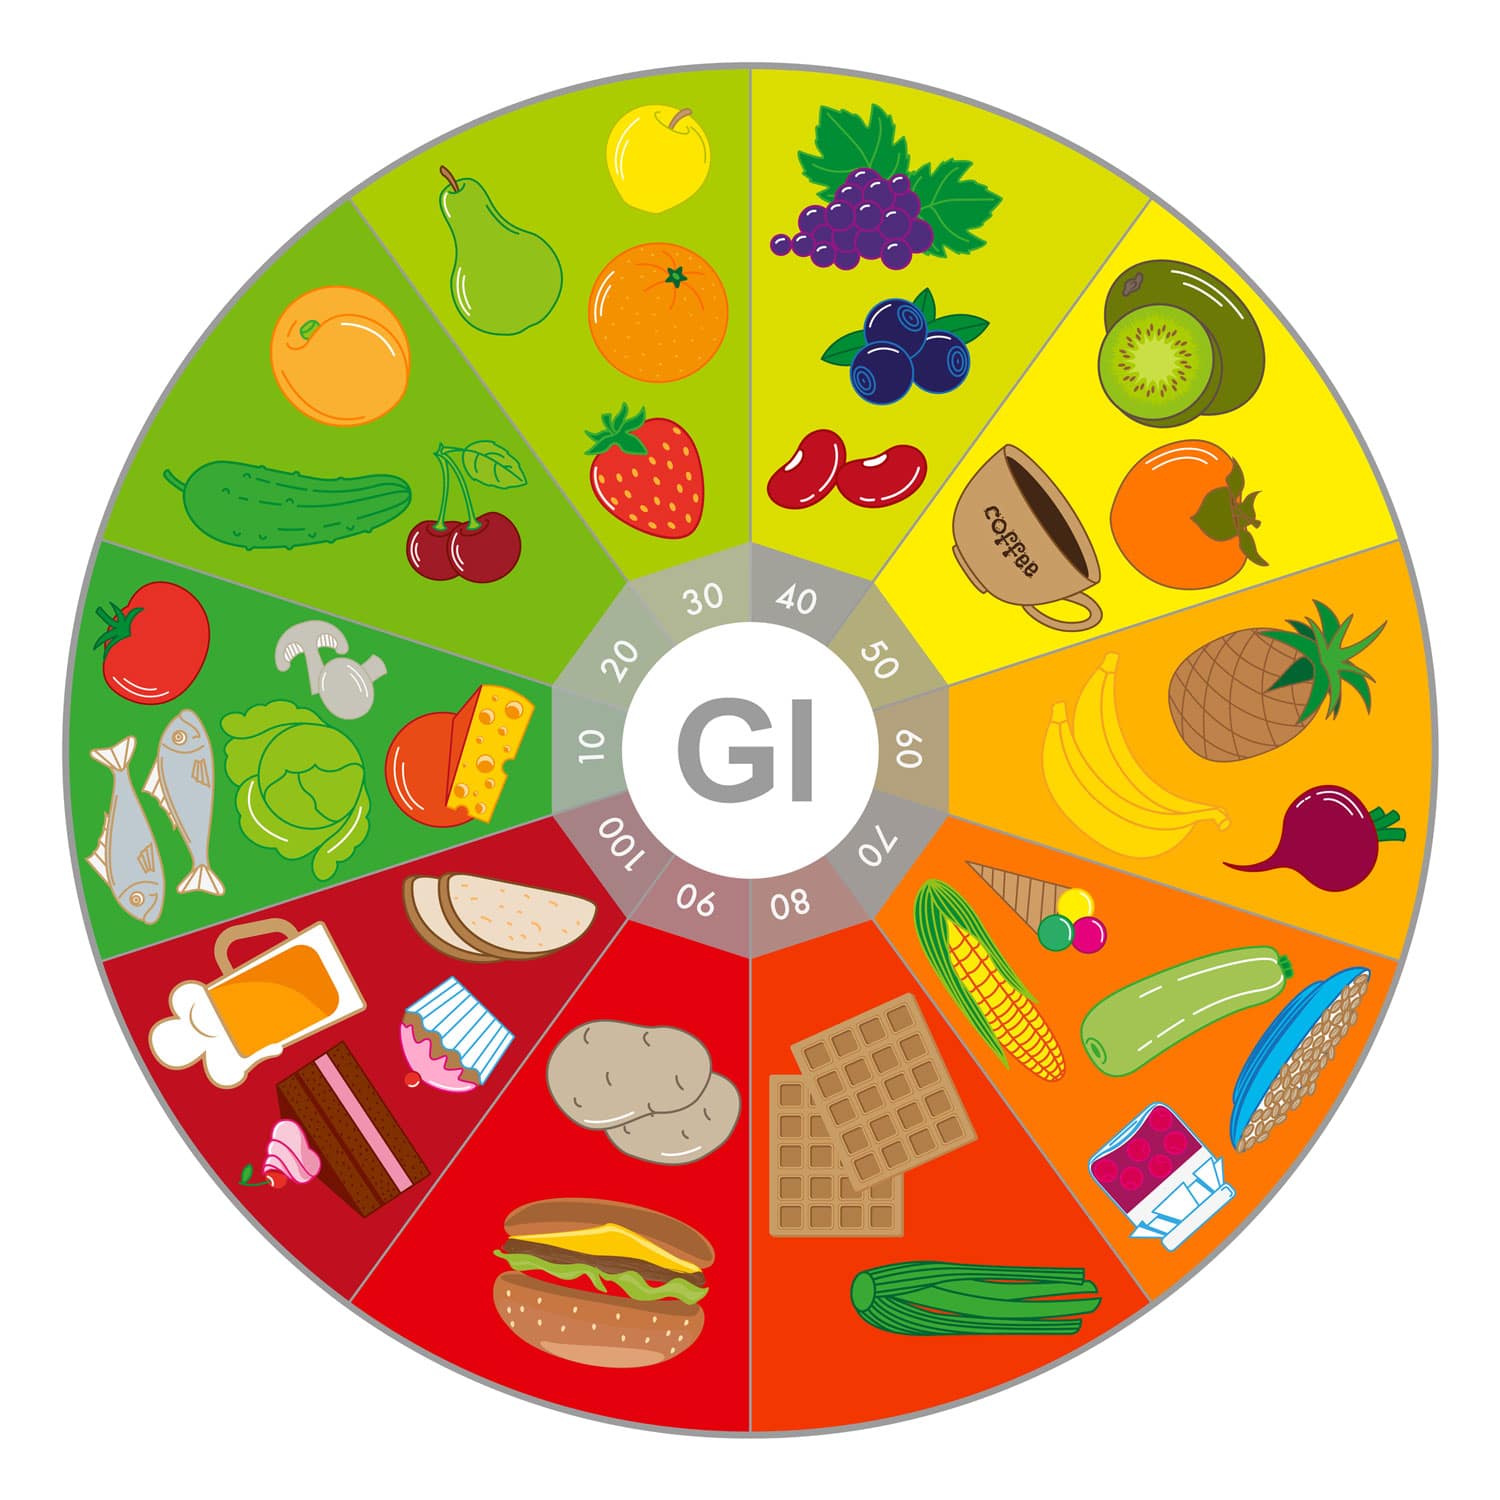 Hier siehst du Beispiele für den glykämischen Index und diverse Lebensmittel.